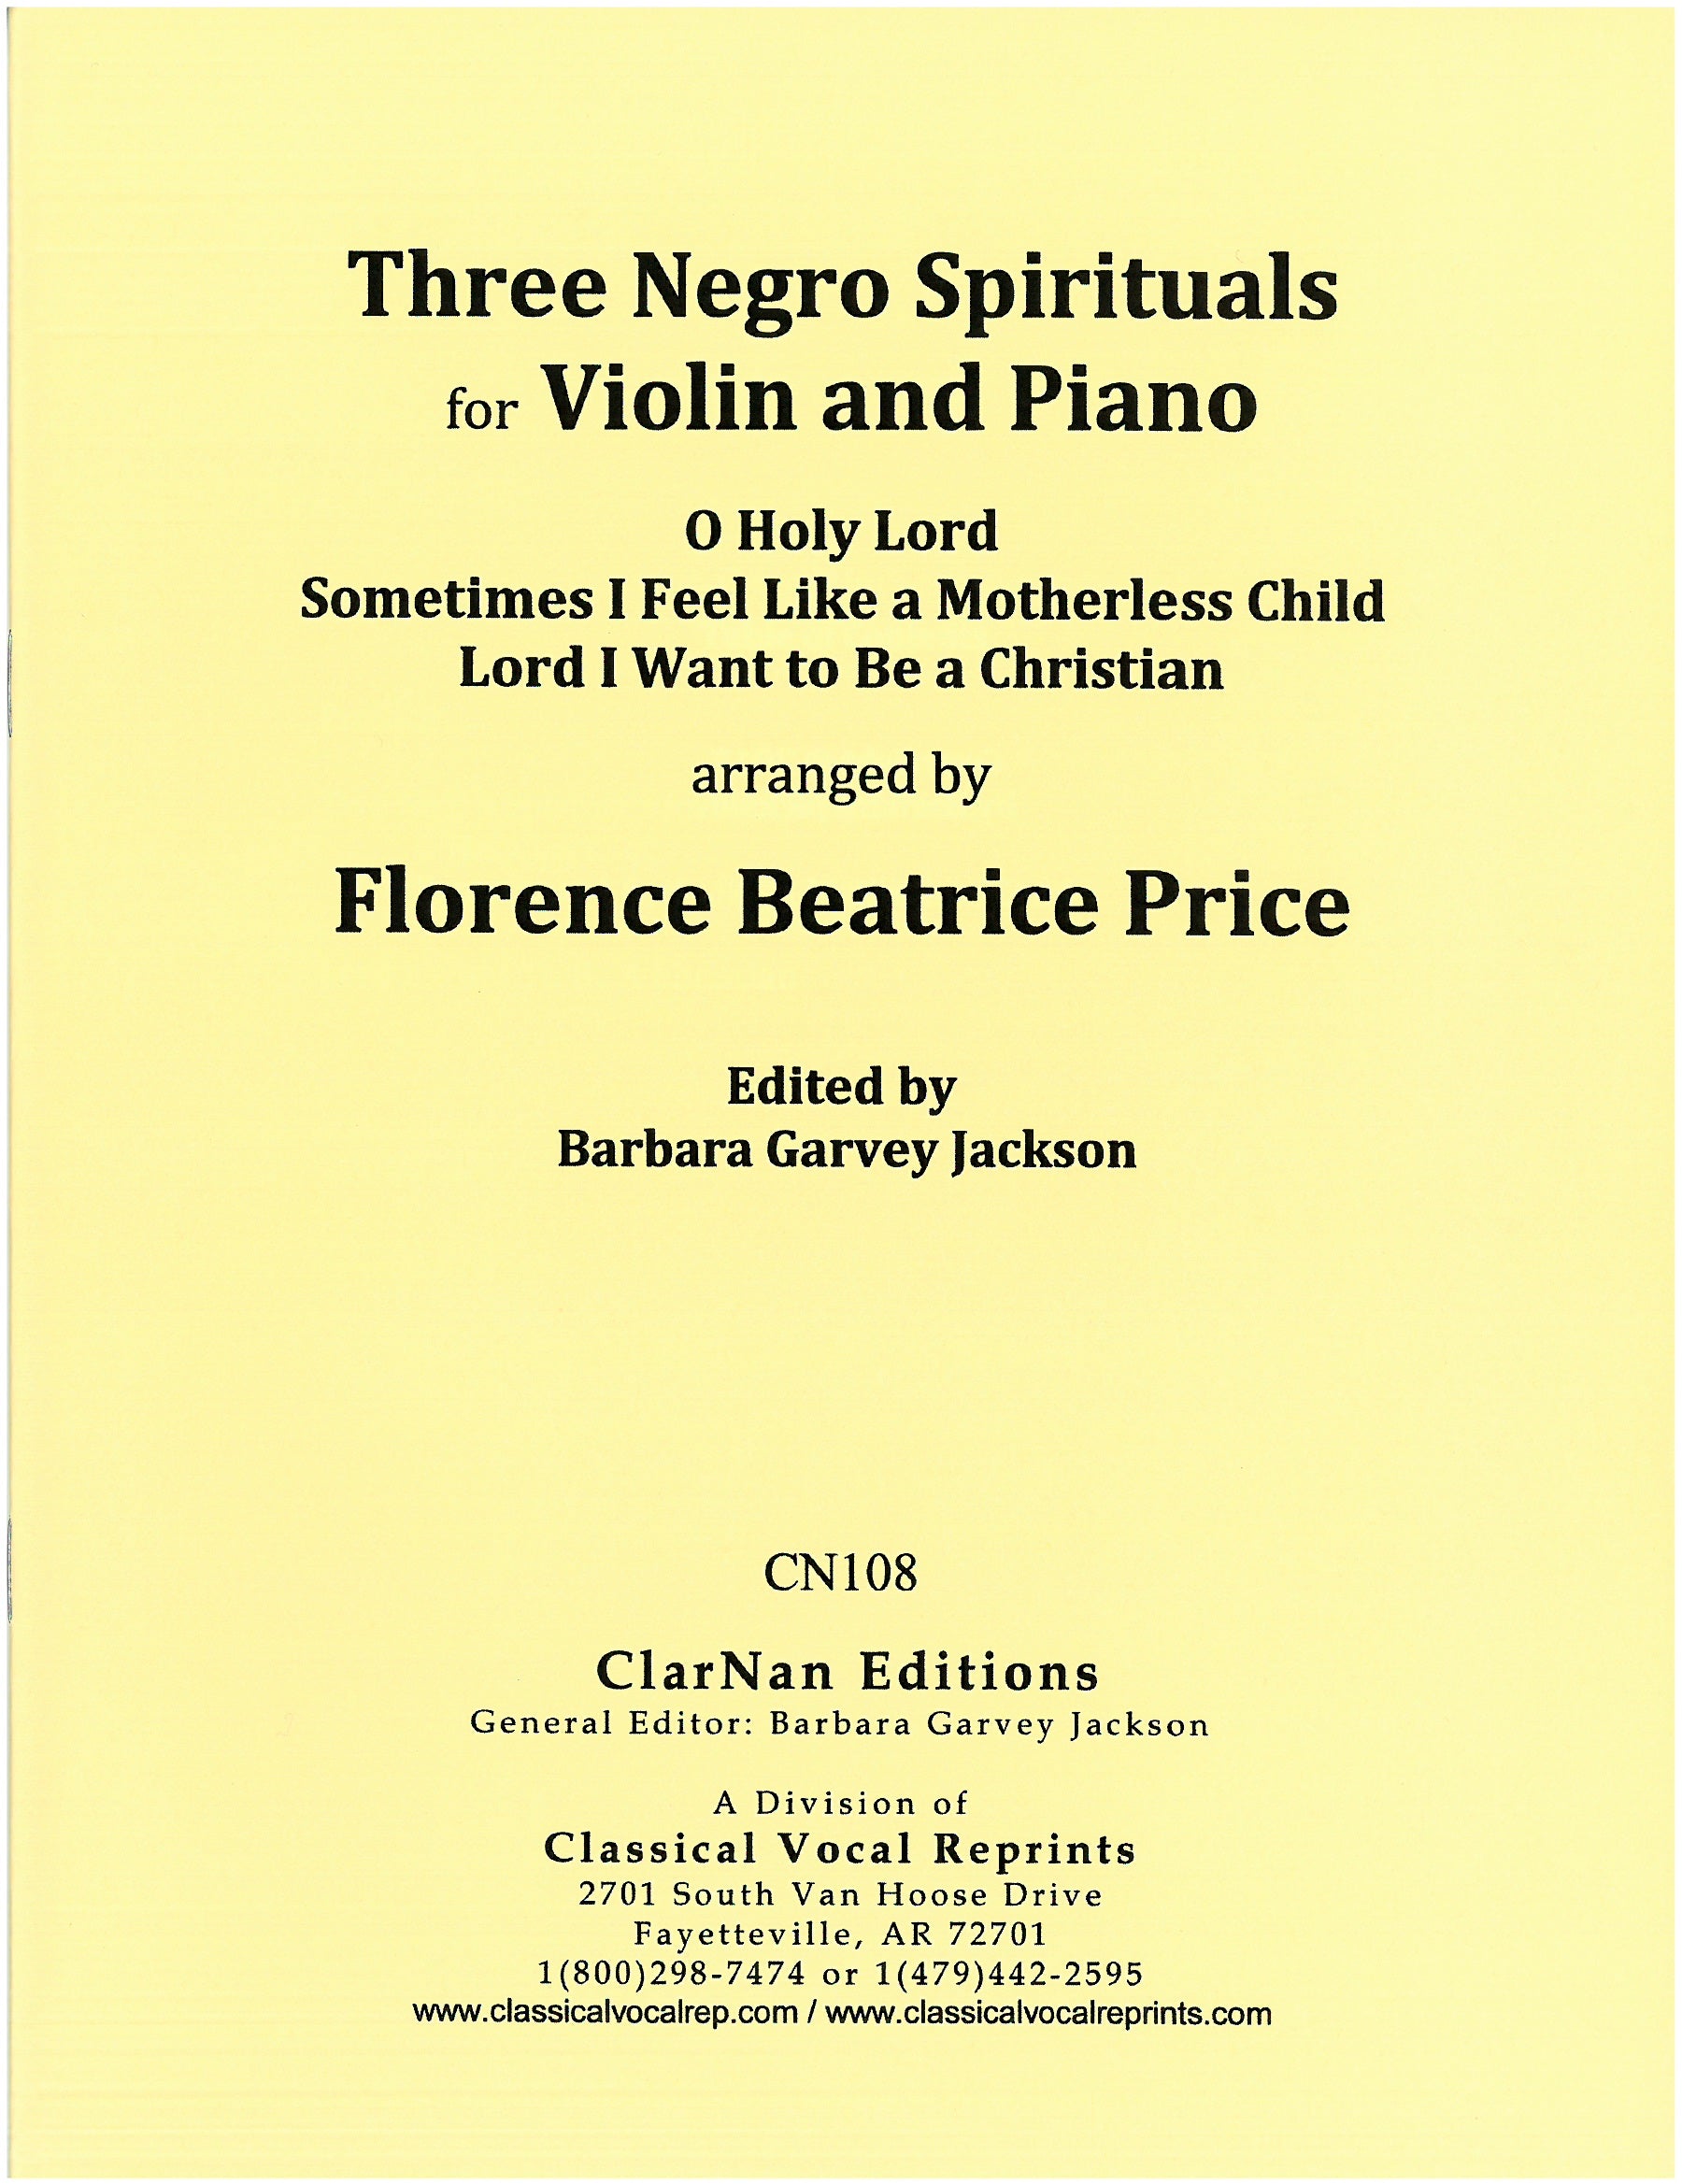 Price: 3 Negro Spirituals for Violin and Piano